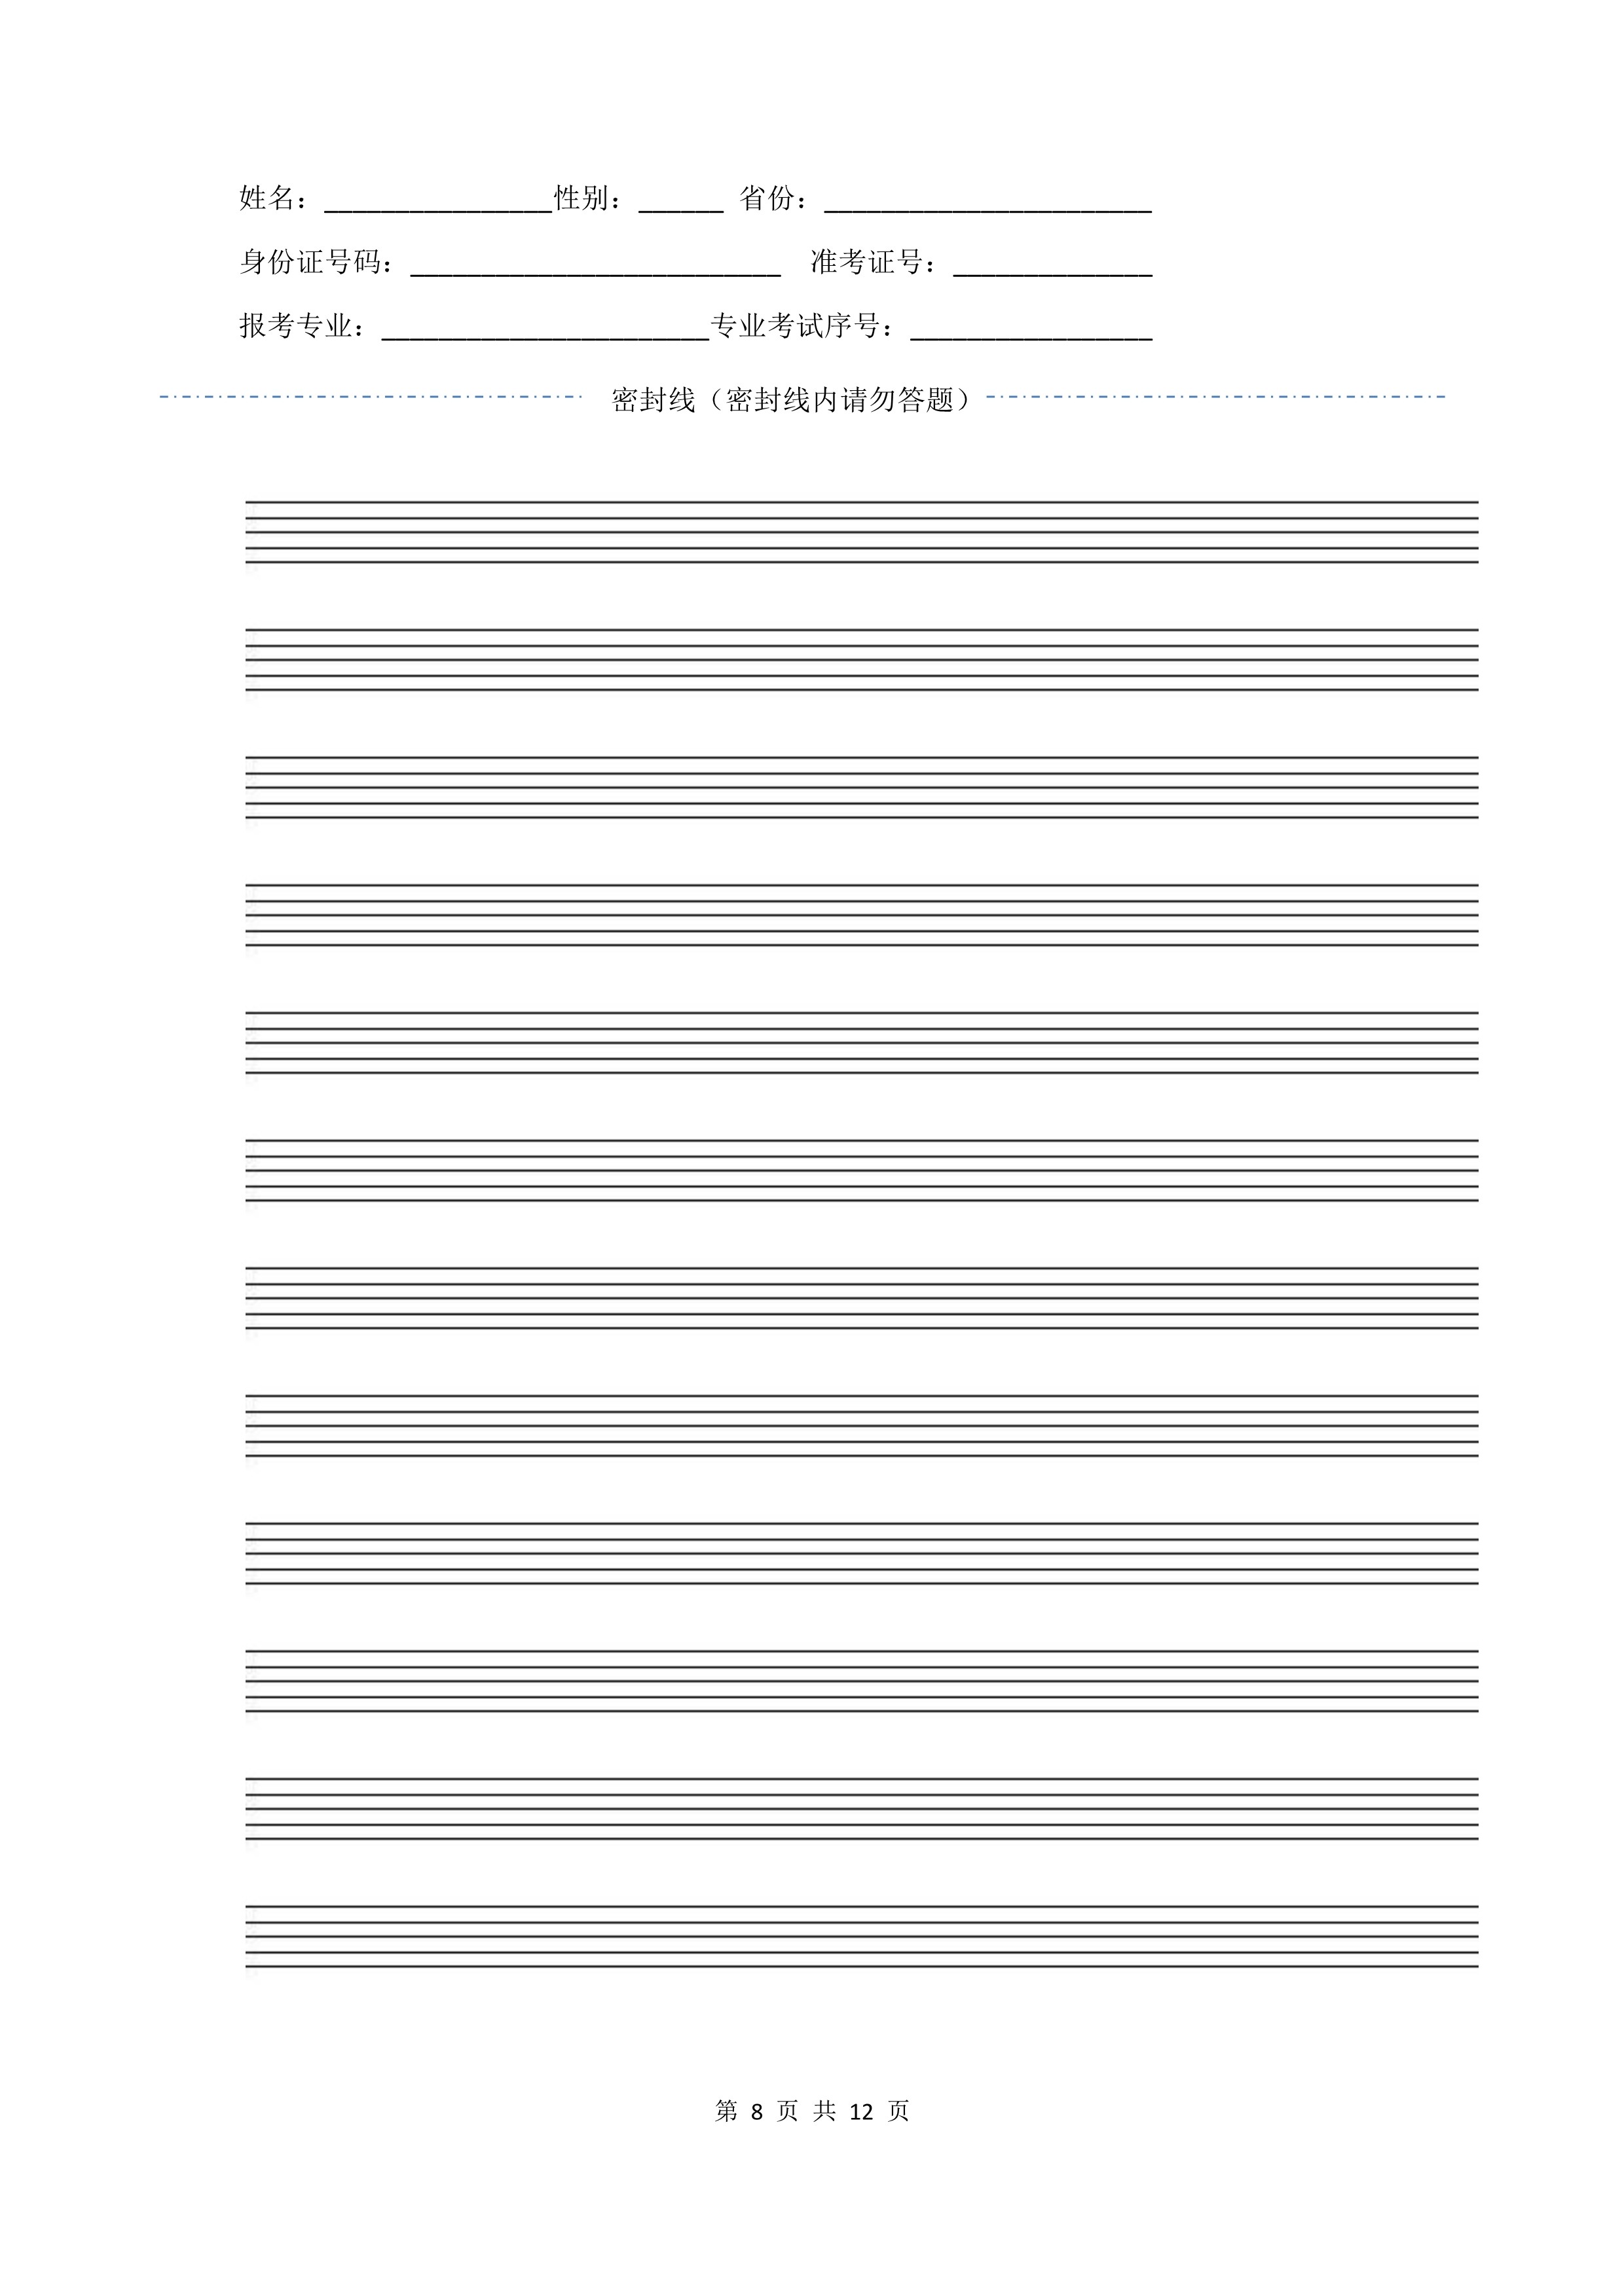 南京艺术学院2022年本科招生作曲与作曲技术理论、作曲与作曲技术理论（计算机作曲）专业《器乐曲写作》科目考试答题纸及草稿纸_8 - 副本.jpg